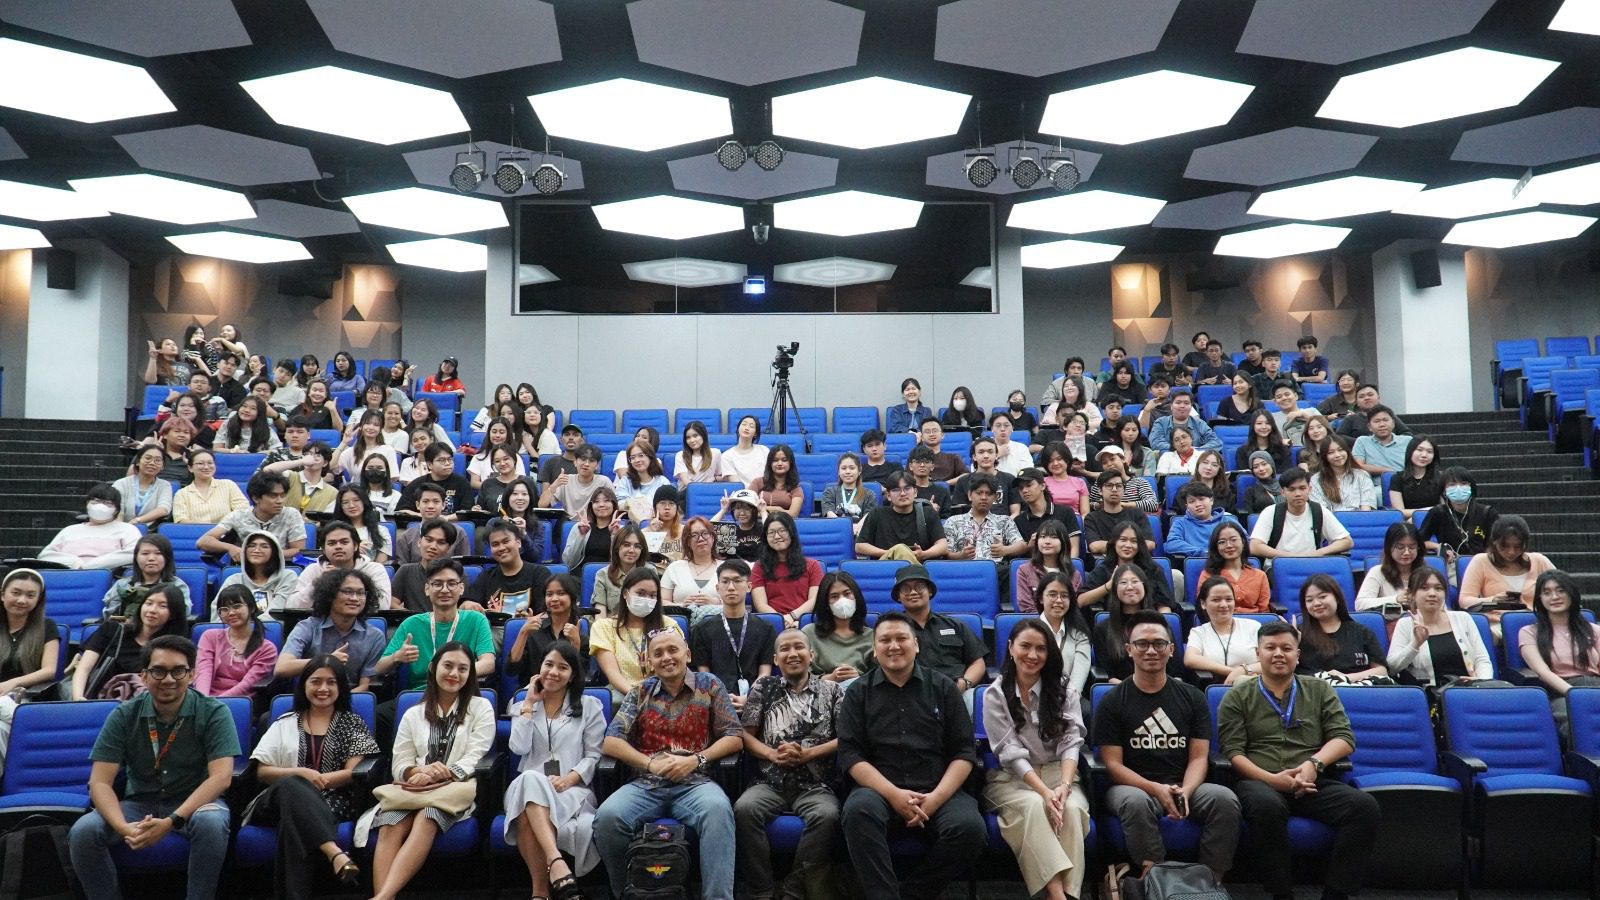 Kuliah Tamu Media Relations Bahas Tips & Trik Rawat Relasi dengan Media